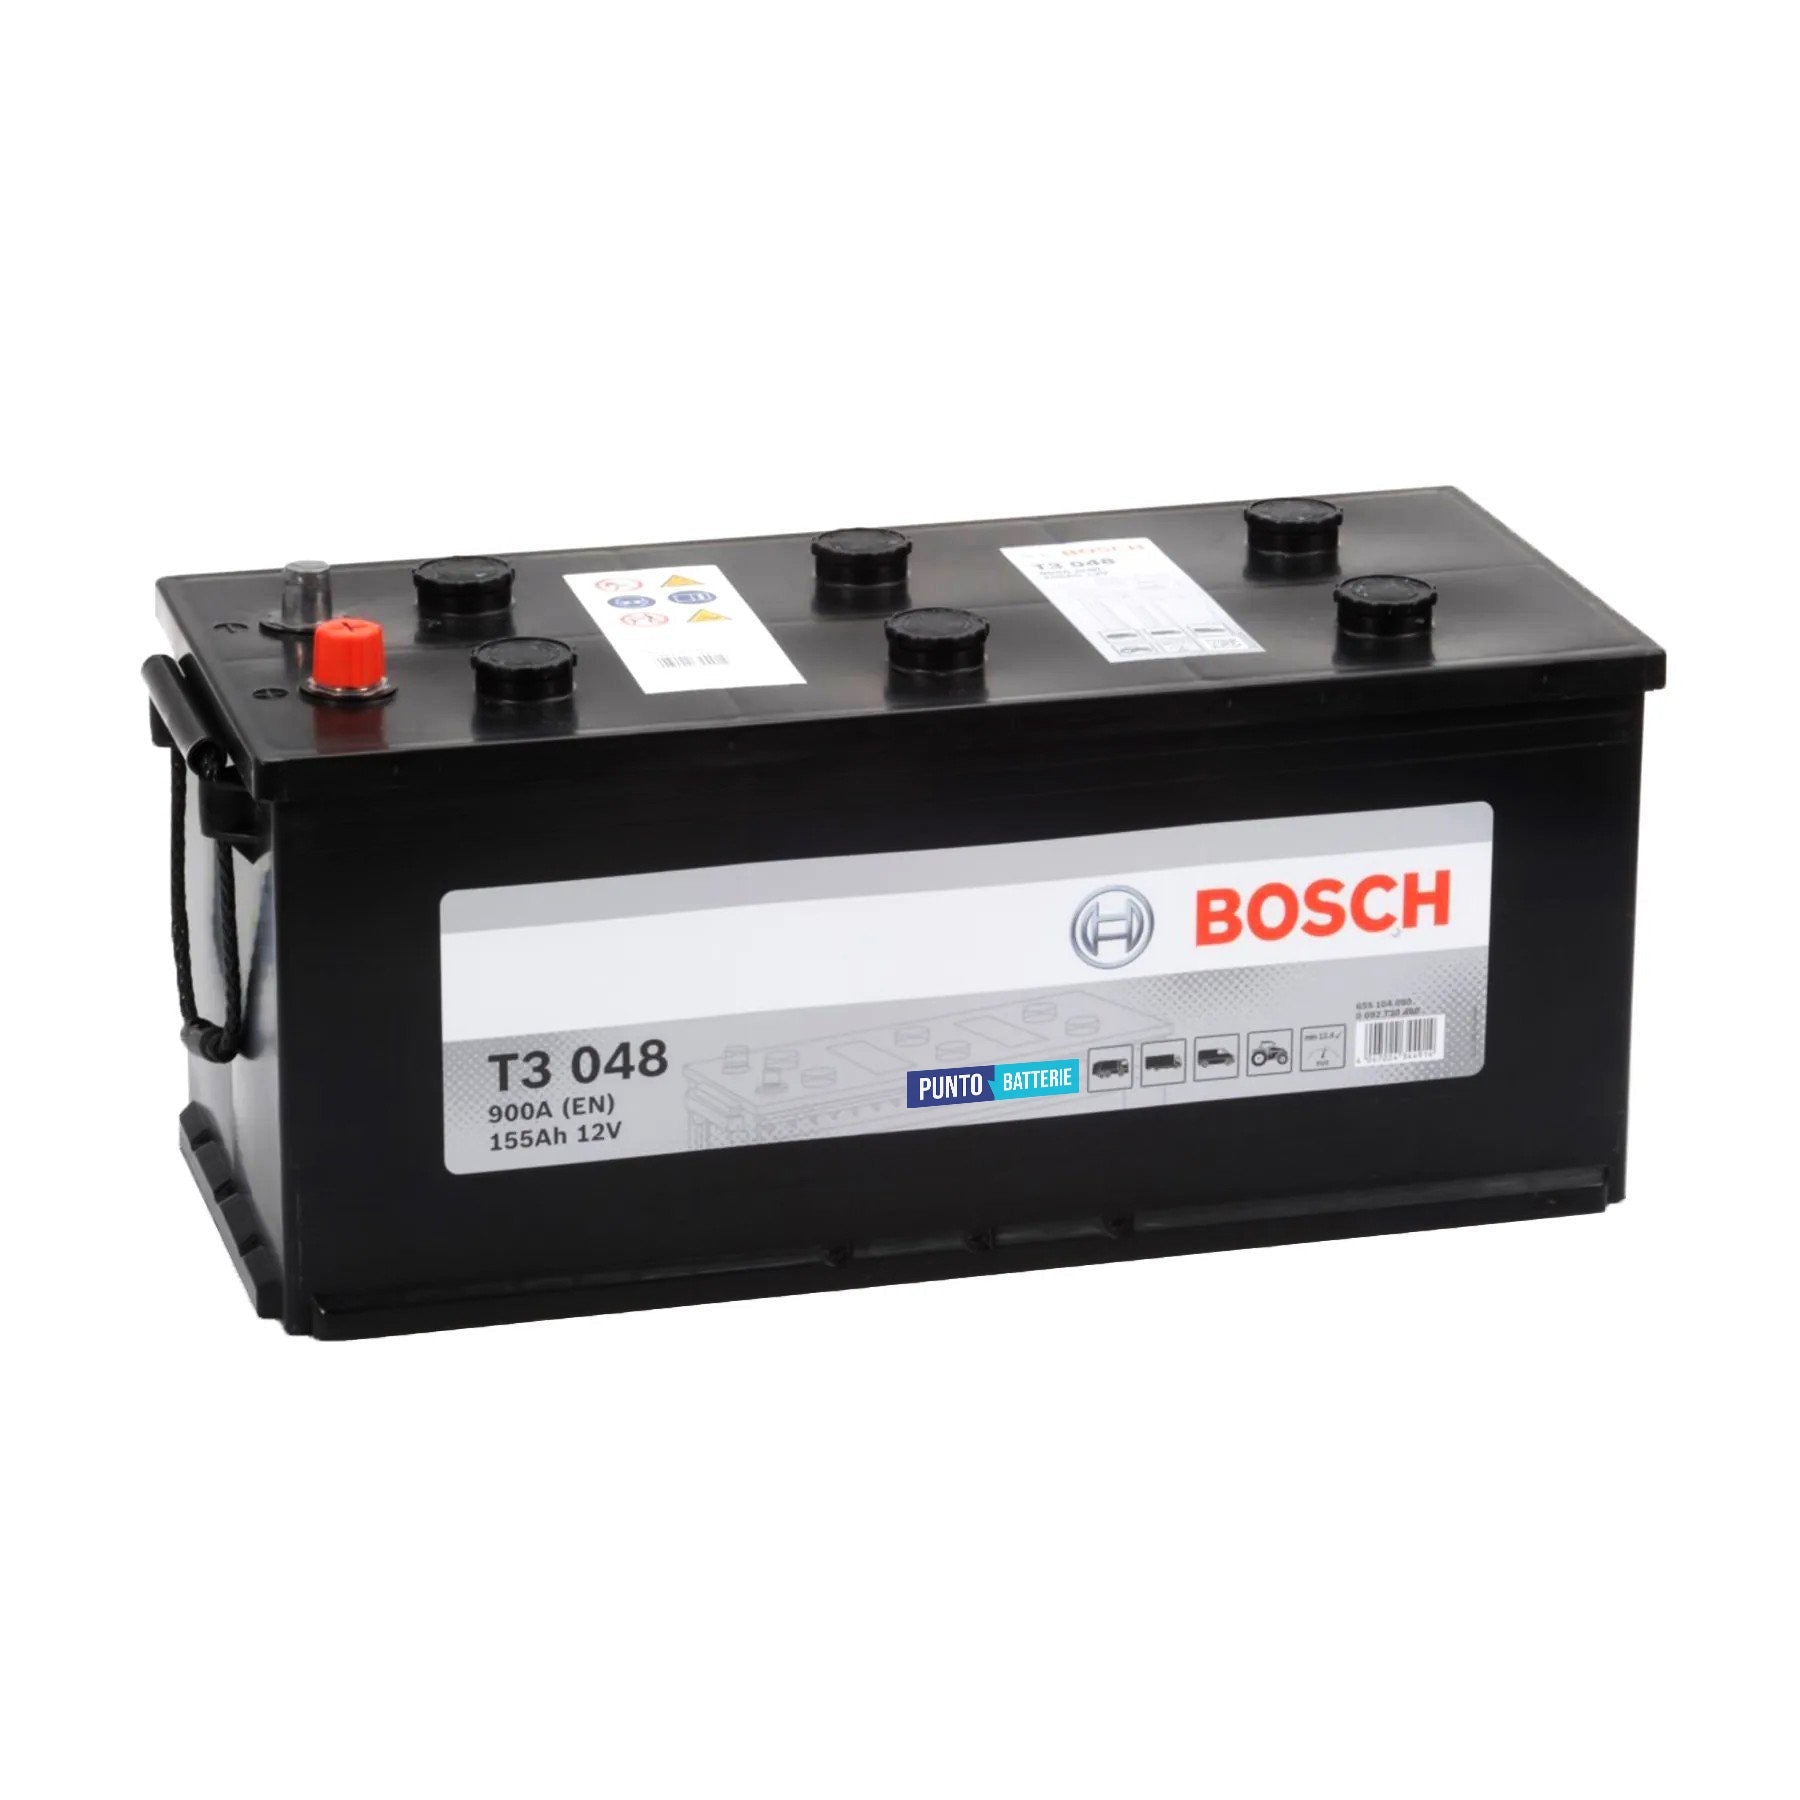 Batteria originale Bosch T3 T3048, dimensioni 516 x 218 x 223, polo positivo a destra, 12 volt, 155 amperora, 900 ampere. Batteria per camion e veicoli pesanti.